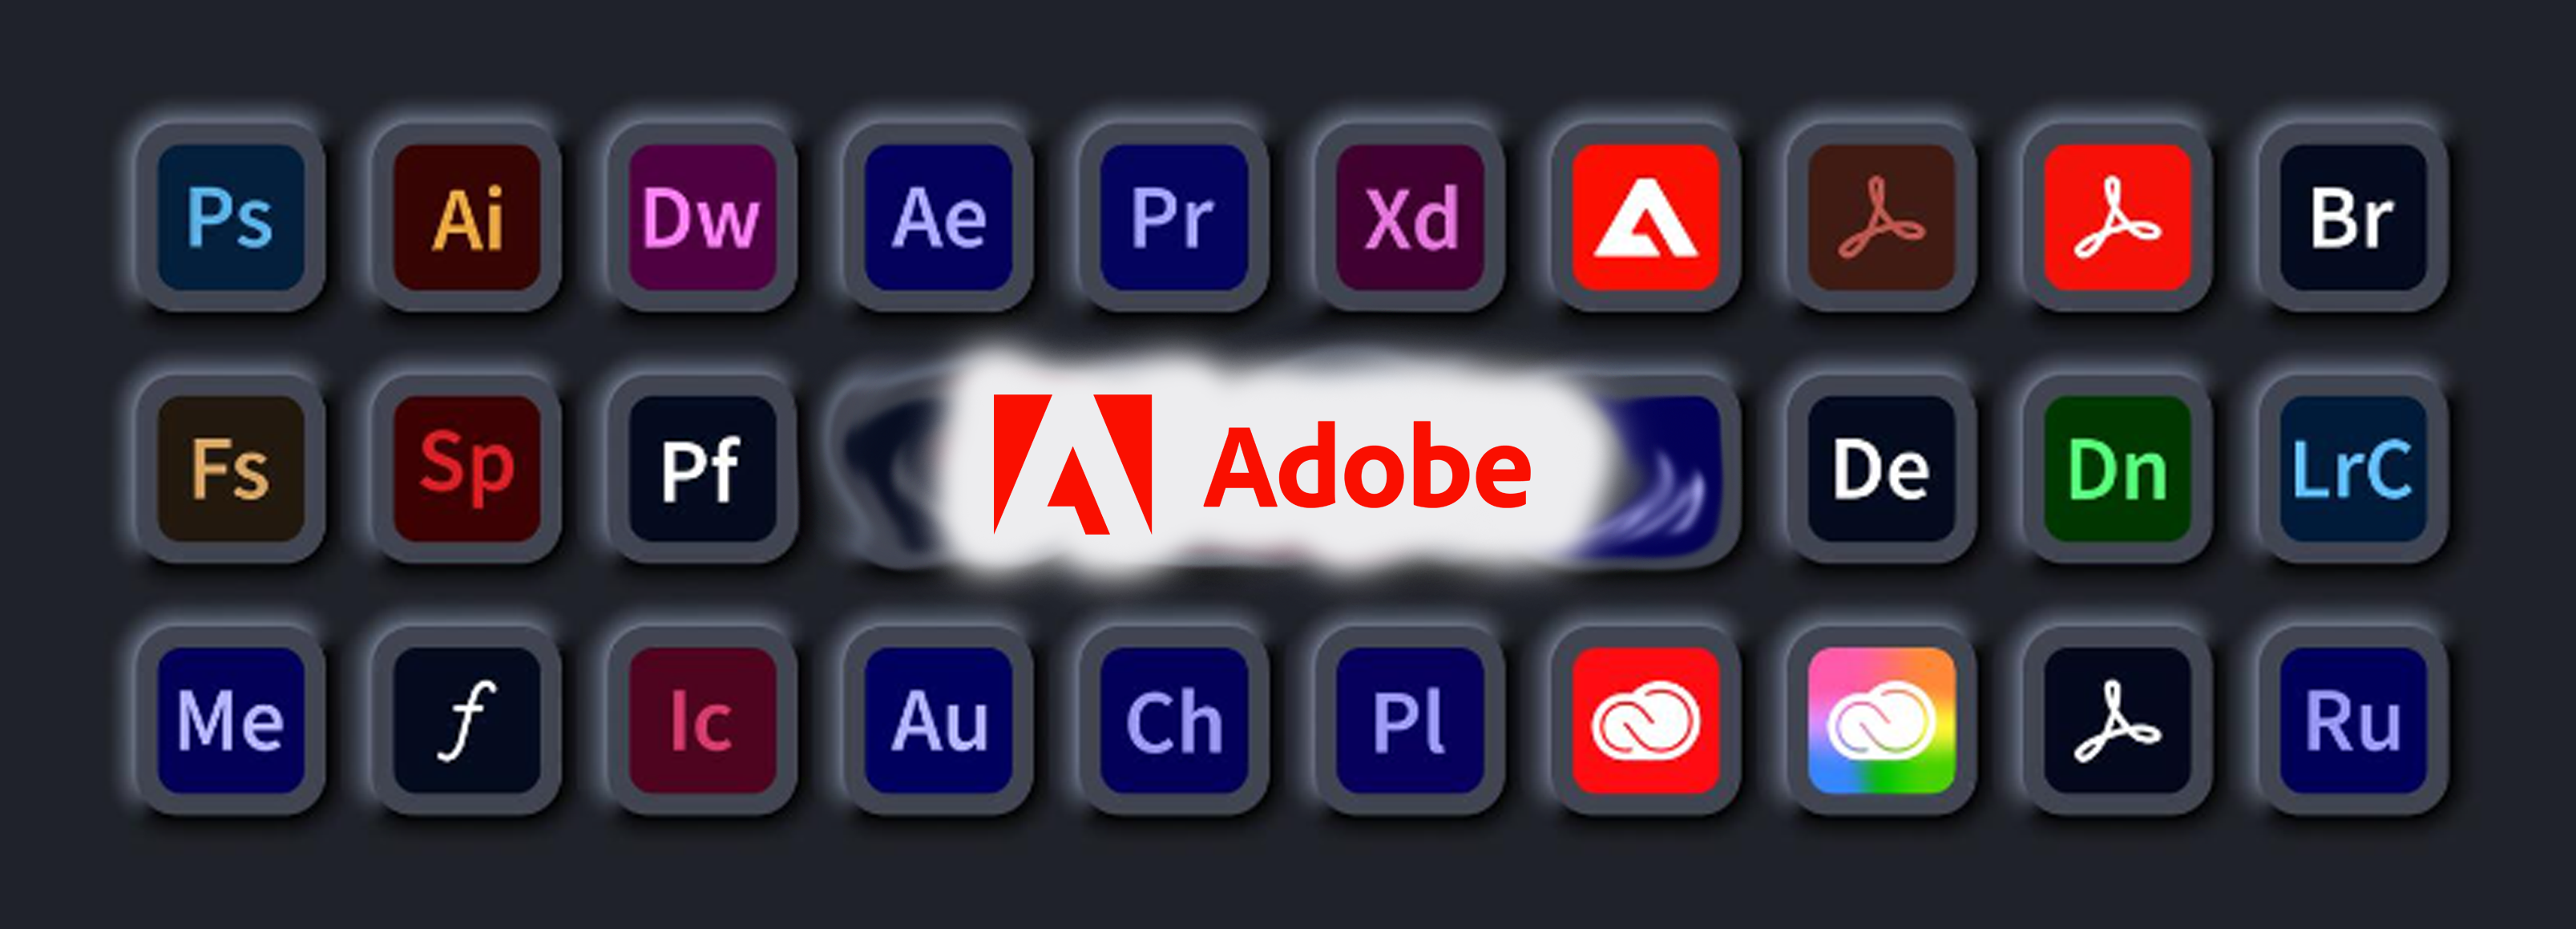 Adobelisenser illustrasjon